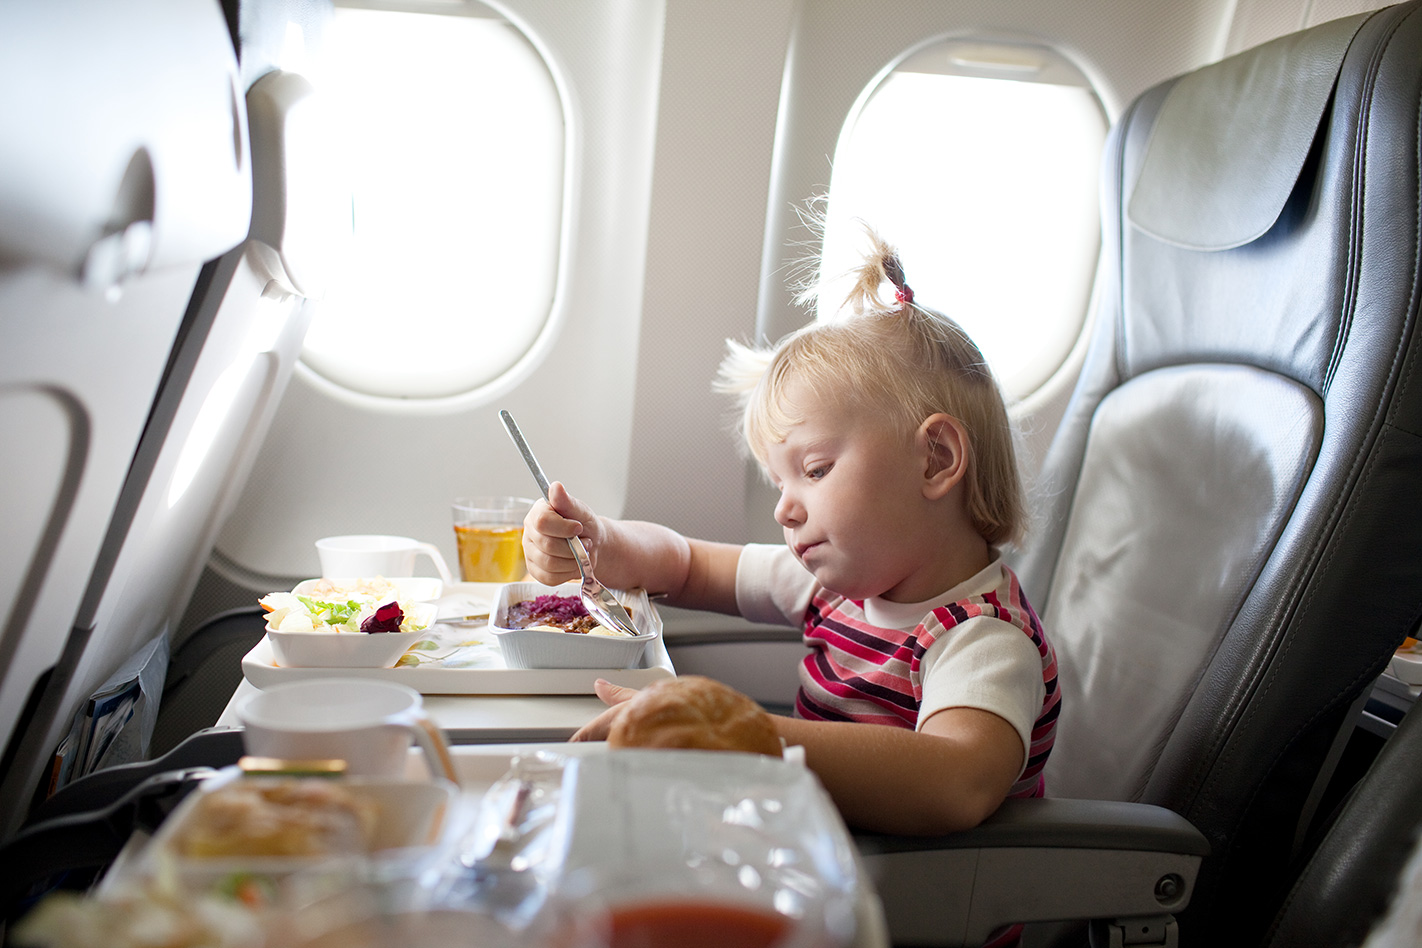 5 интересных идей, чем можно занять ребенка в самолете